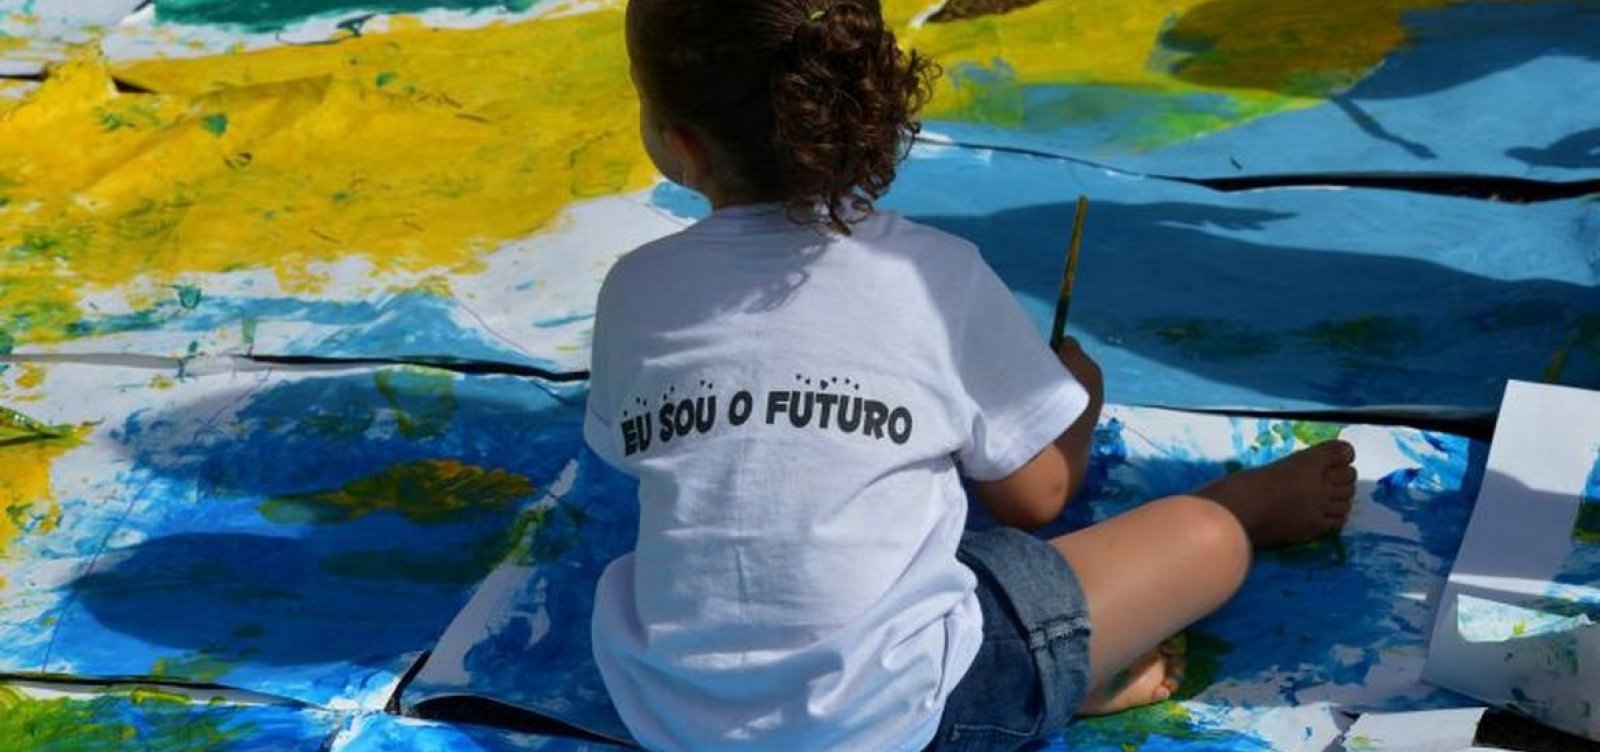 Brasil tem 30 mil crianças acolhidas em abrigos e 5 mil aptas para adoção 